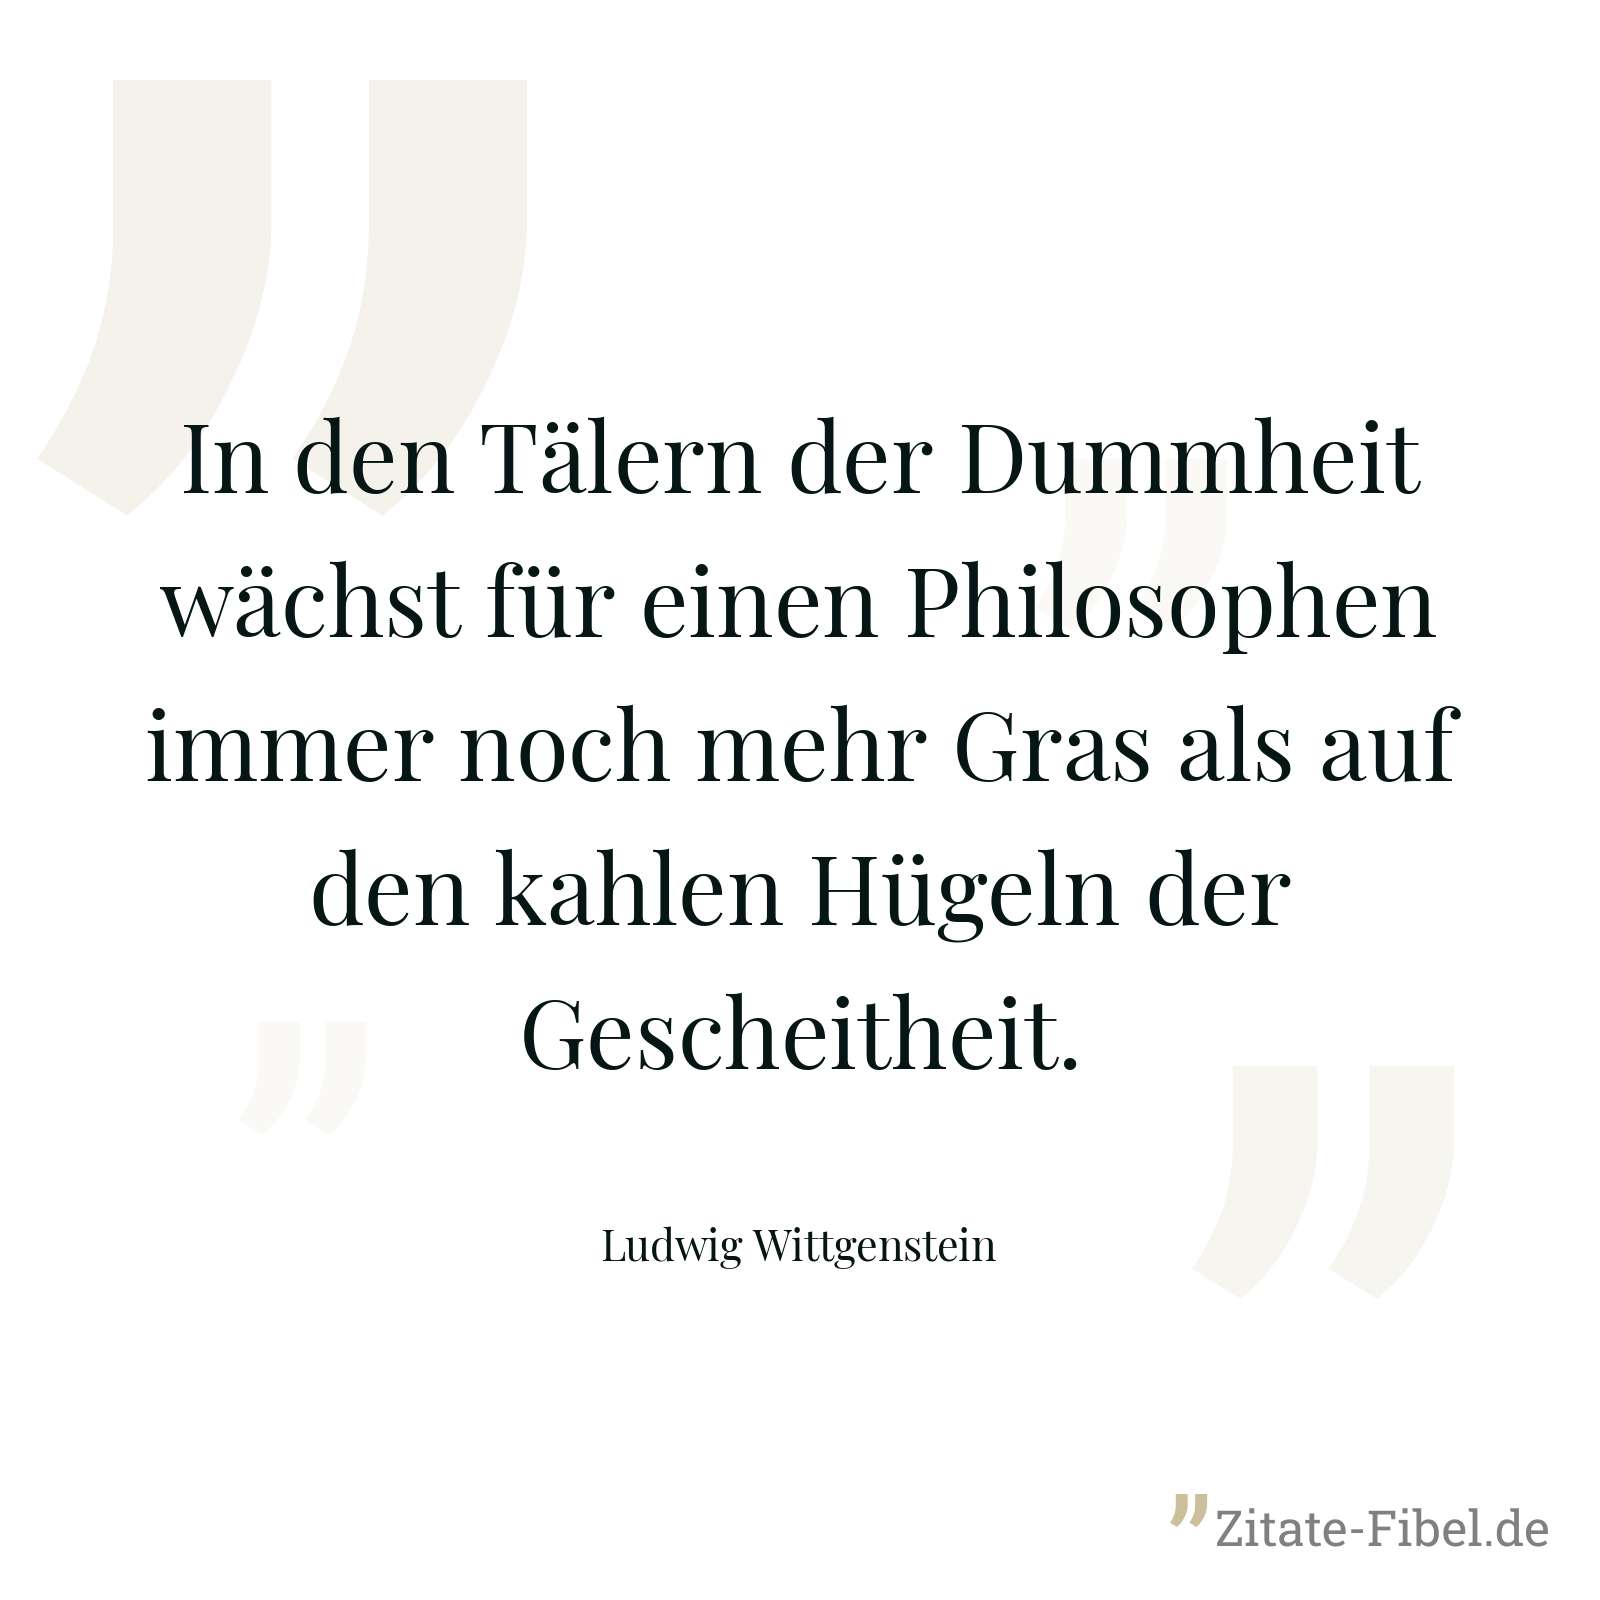 In den Tälern der Dummheit wächst für einen Philosophen immer noch mehr Gras als auf den kahlen Hügeln der Gescheitheit. - Ludwig Wittgenstein